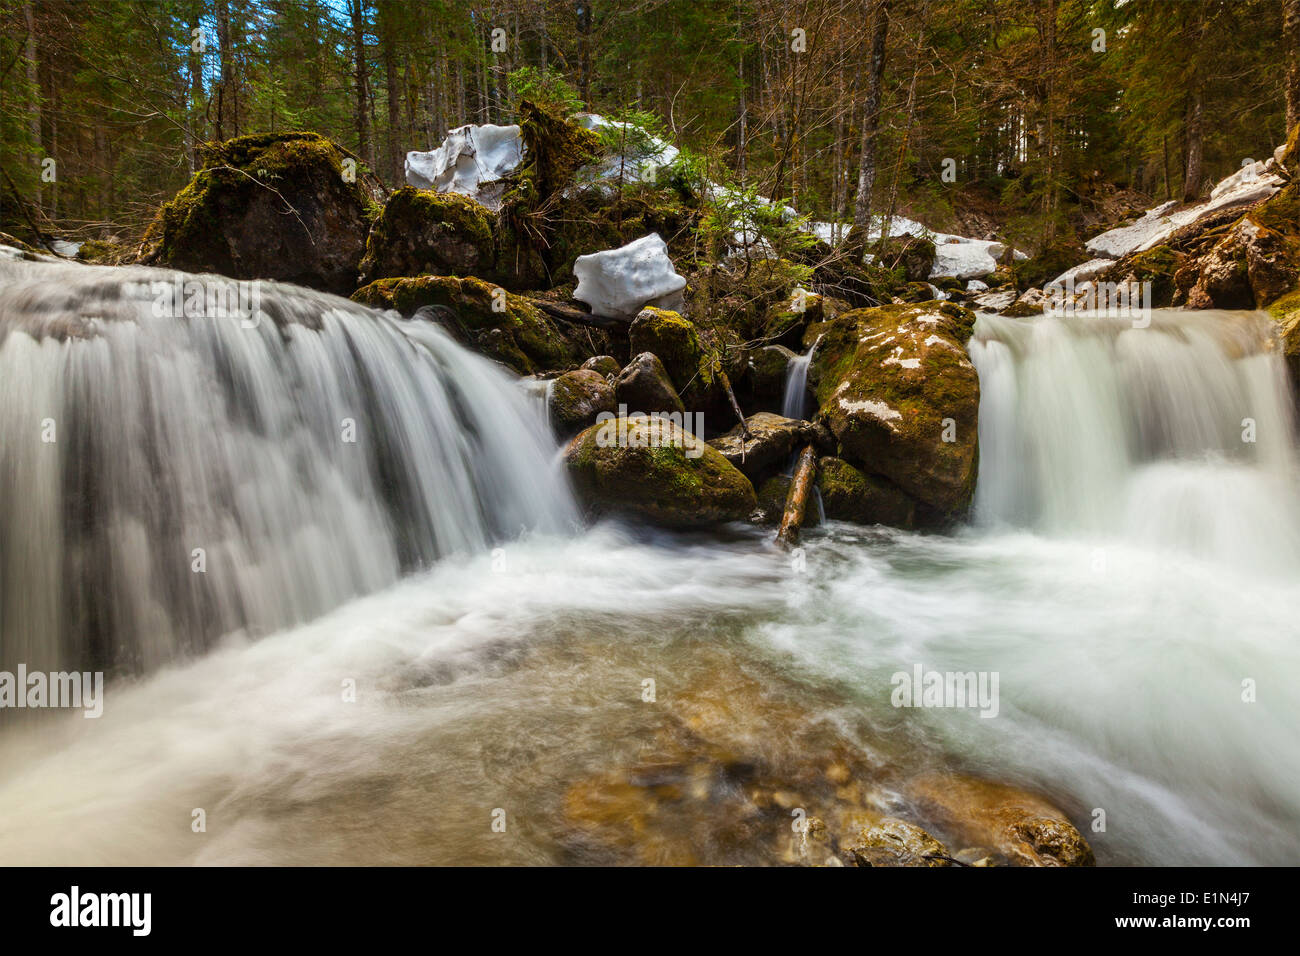 Kaskade von Sibli Wasserfall. Rottach-Egern, Bayern, Deutschland Stockfoto